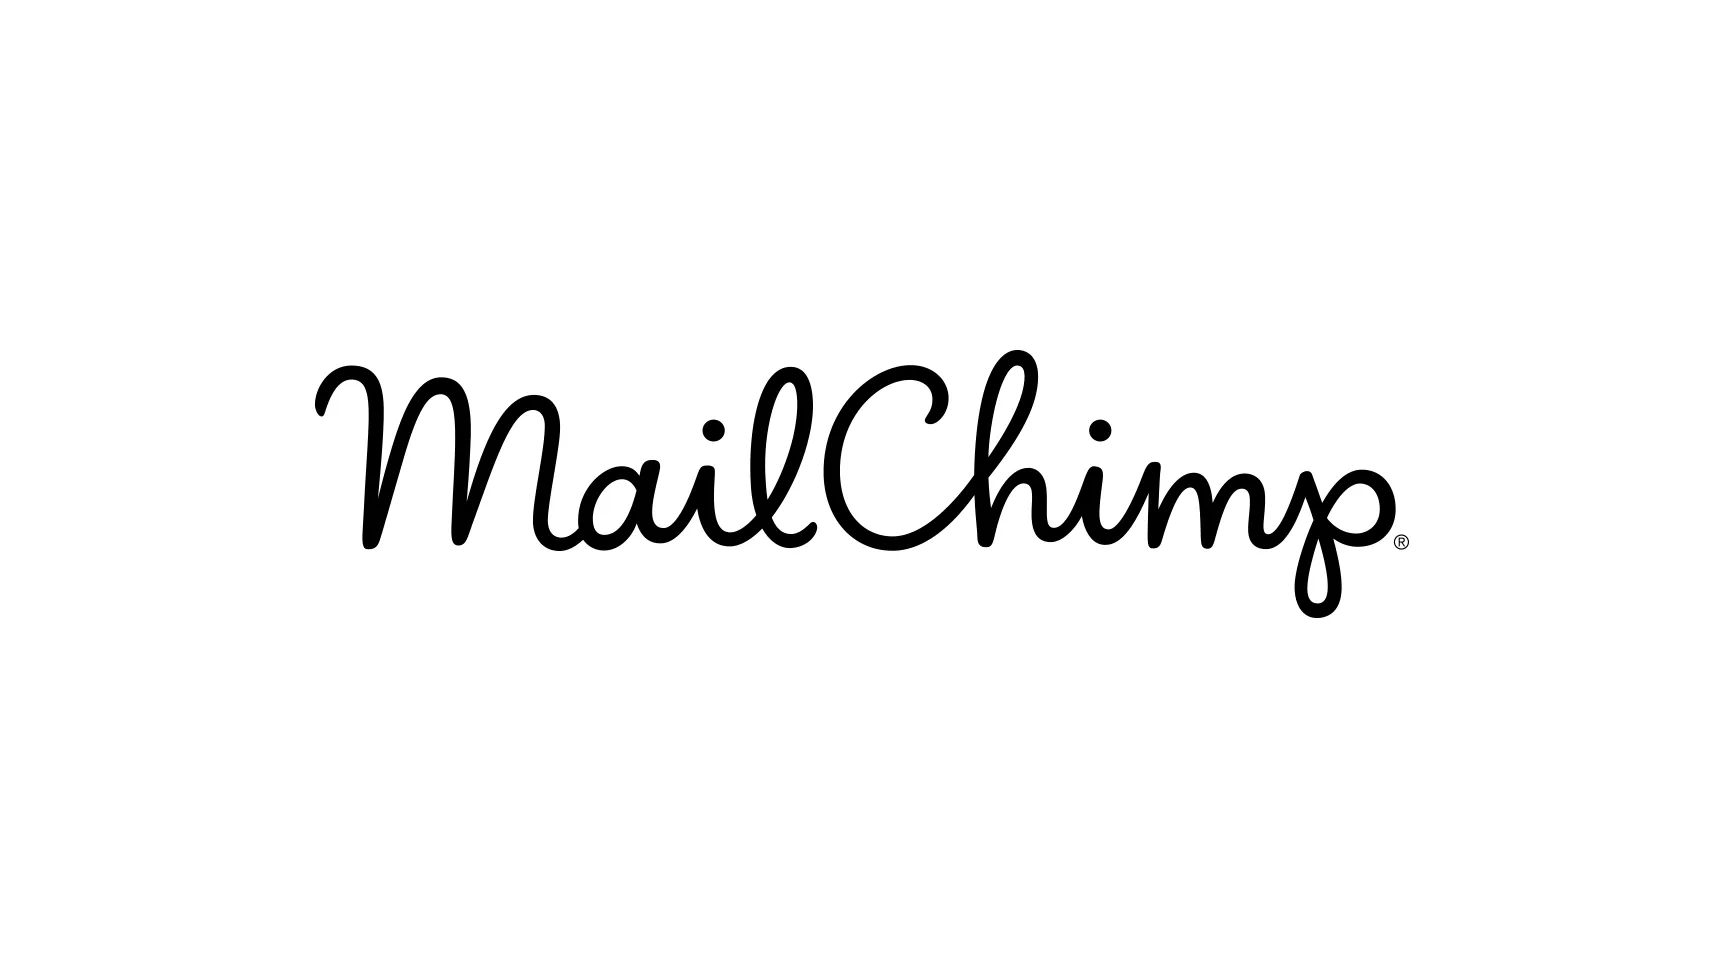 Anbefaling: Udnyt MailChimp til at bedre kommunikere med dine kunder